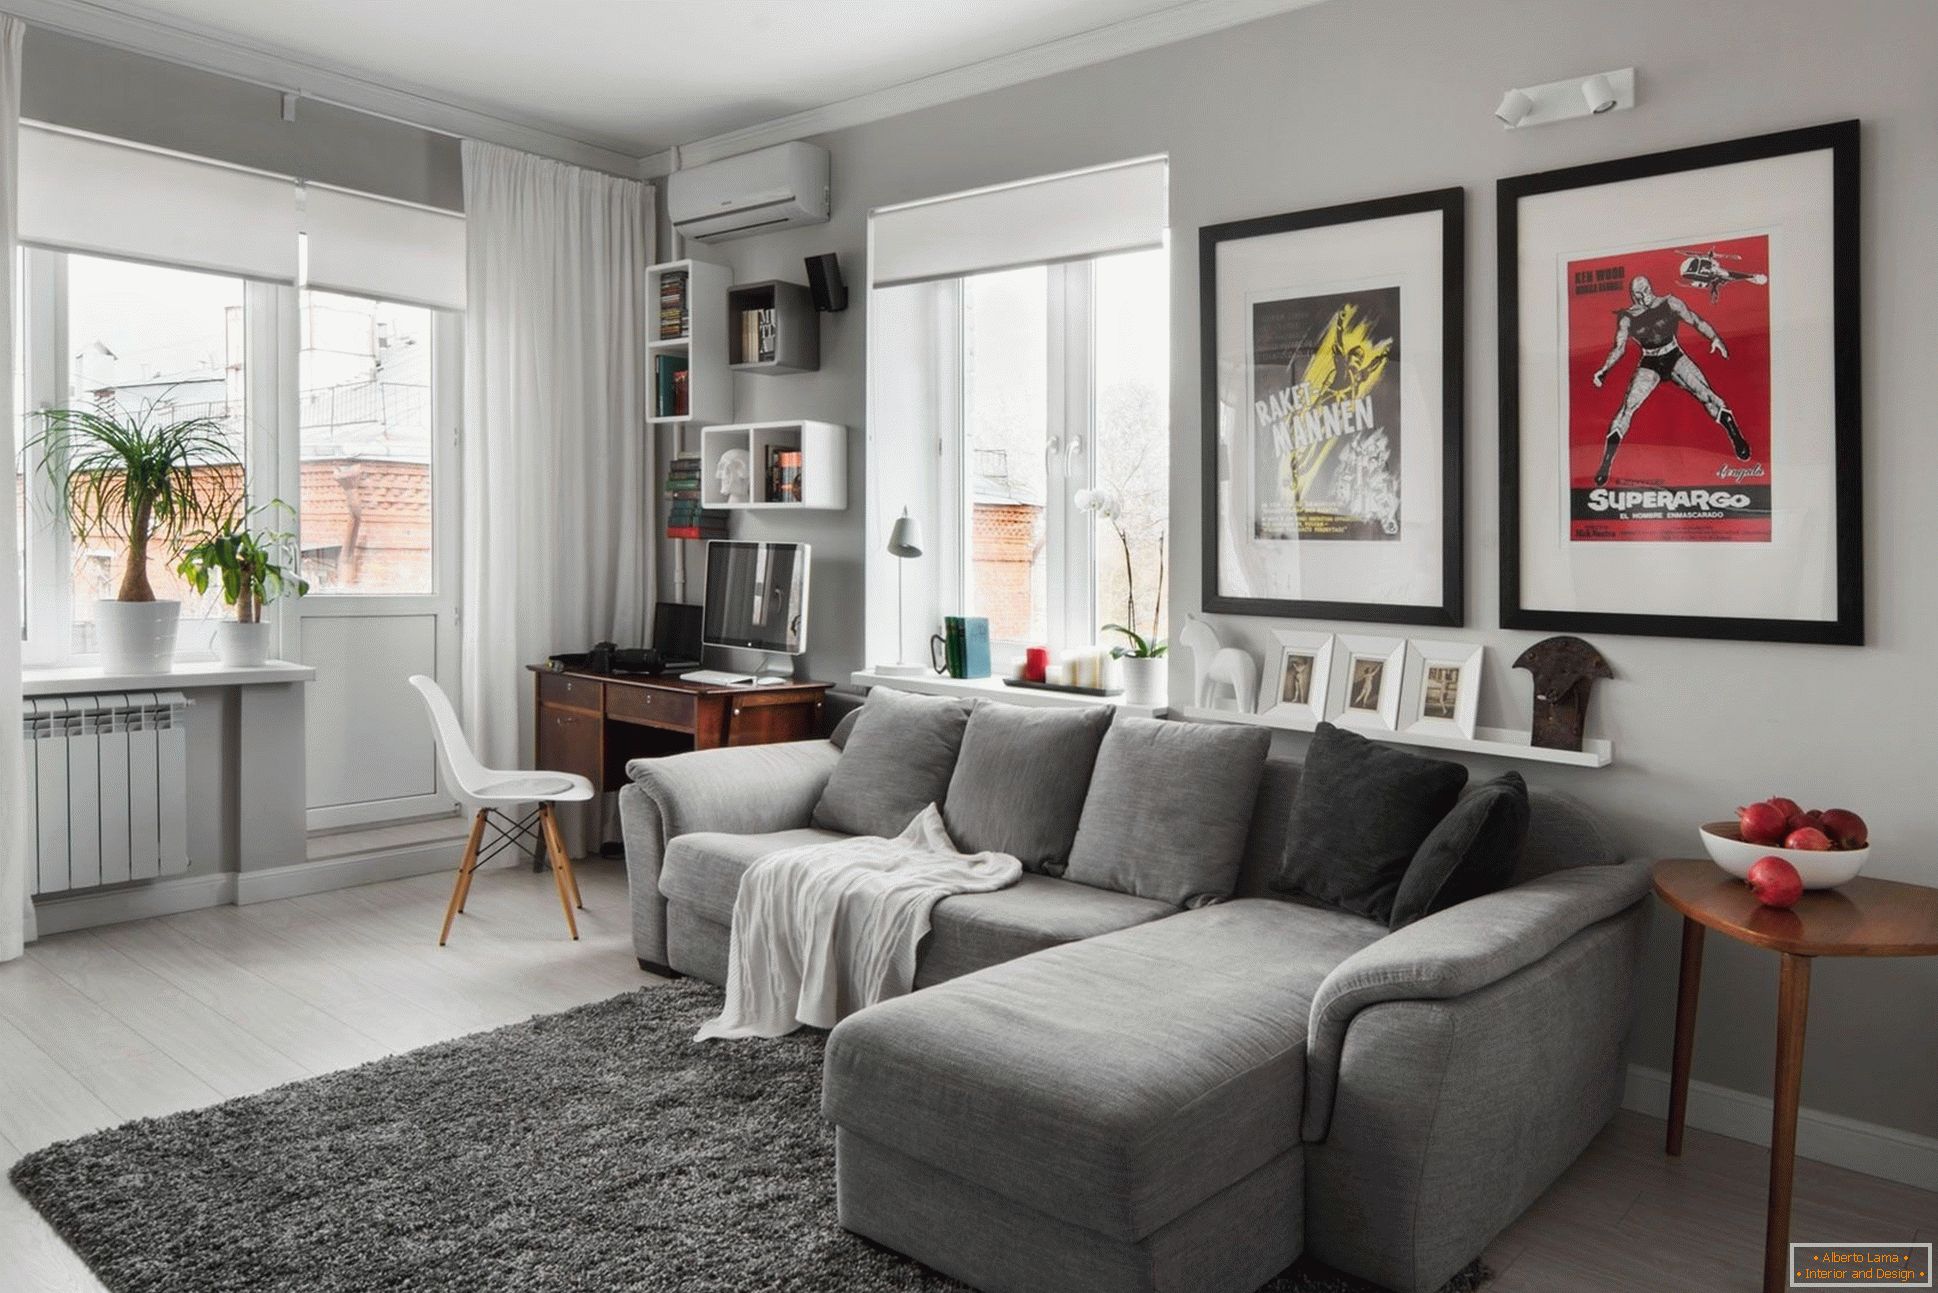 Sala de estar en tonos grises